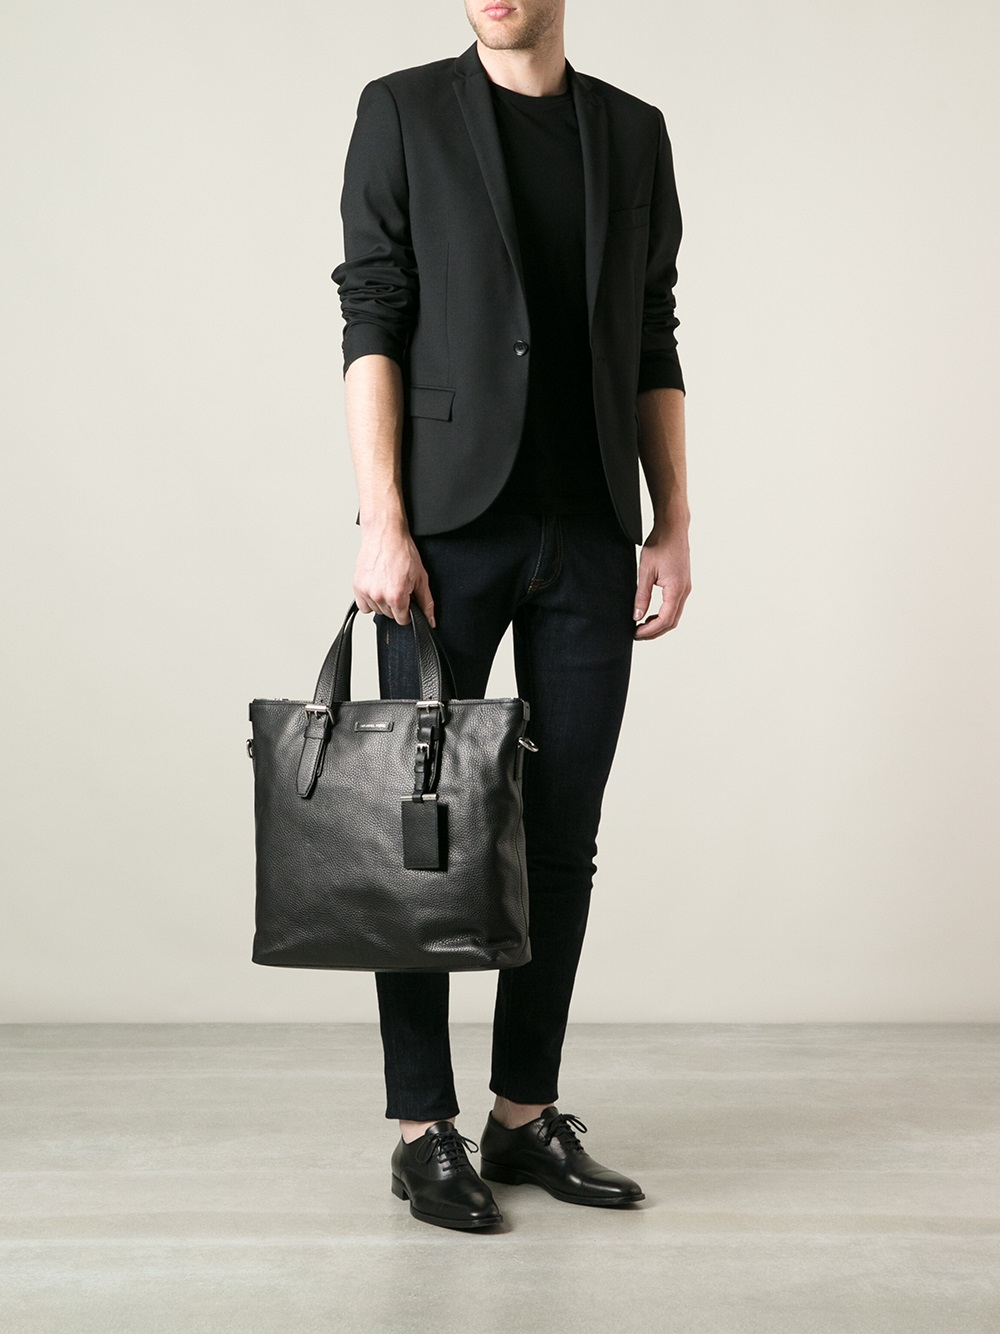 Michael Kors Classic Shoulder Bag in Black for Men - Lyst